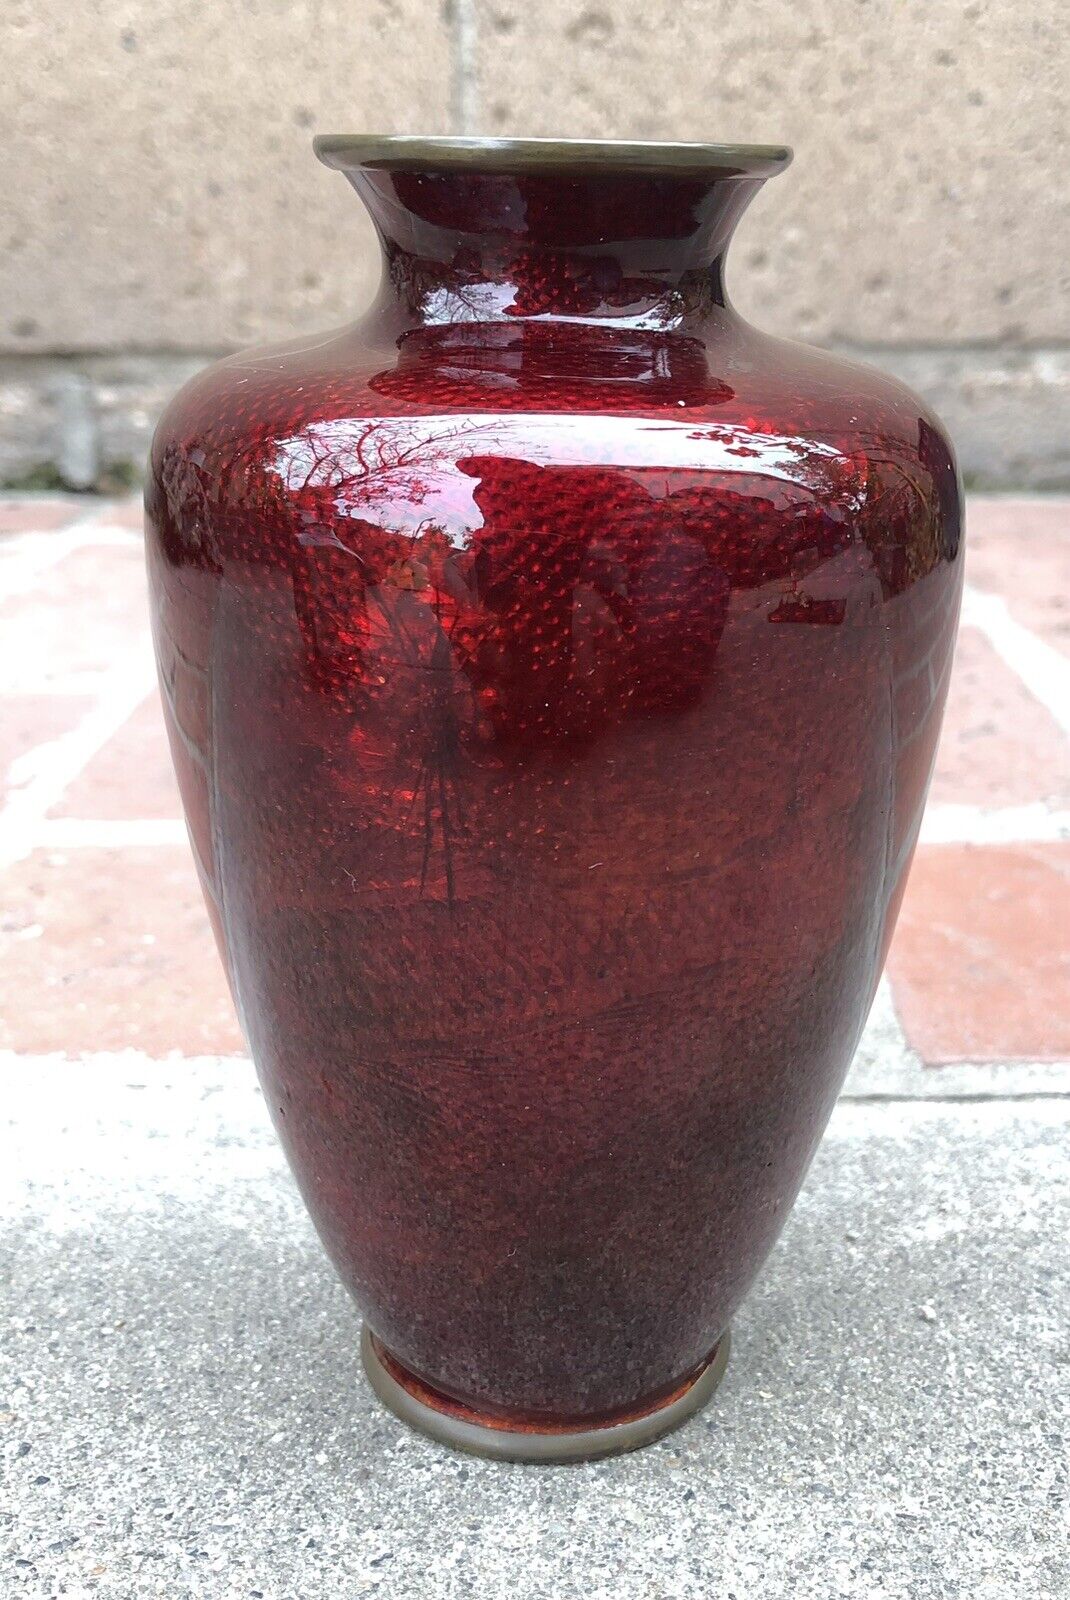 Antique Japanese Akasuke Ginbari Pigeon Blood Red Cloisonne Vase Fish Design